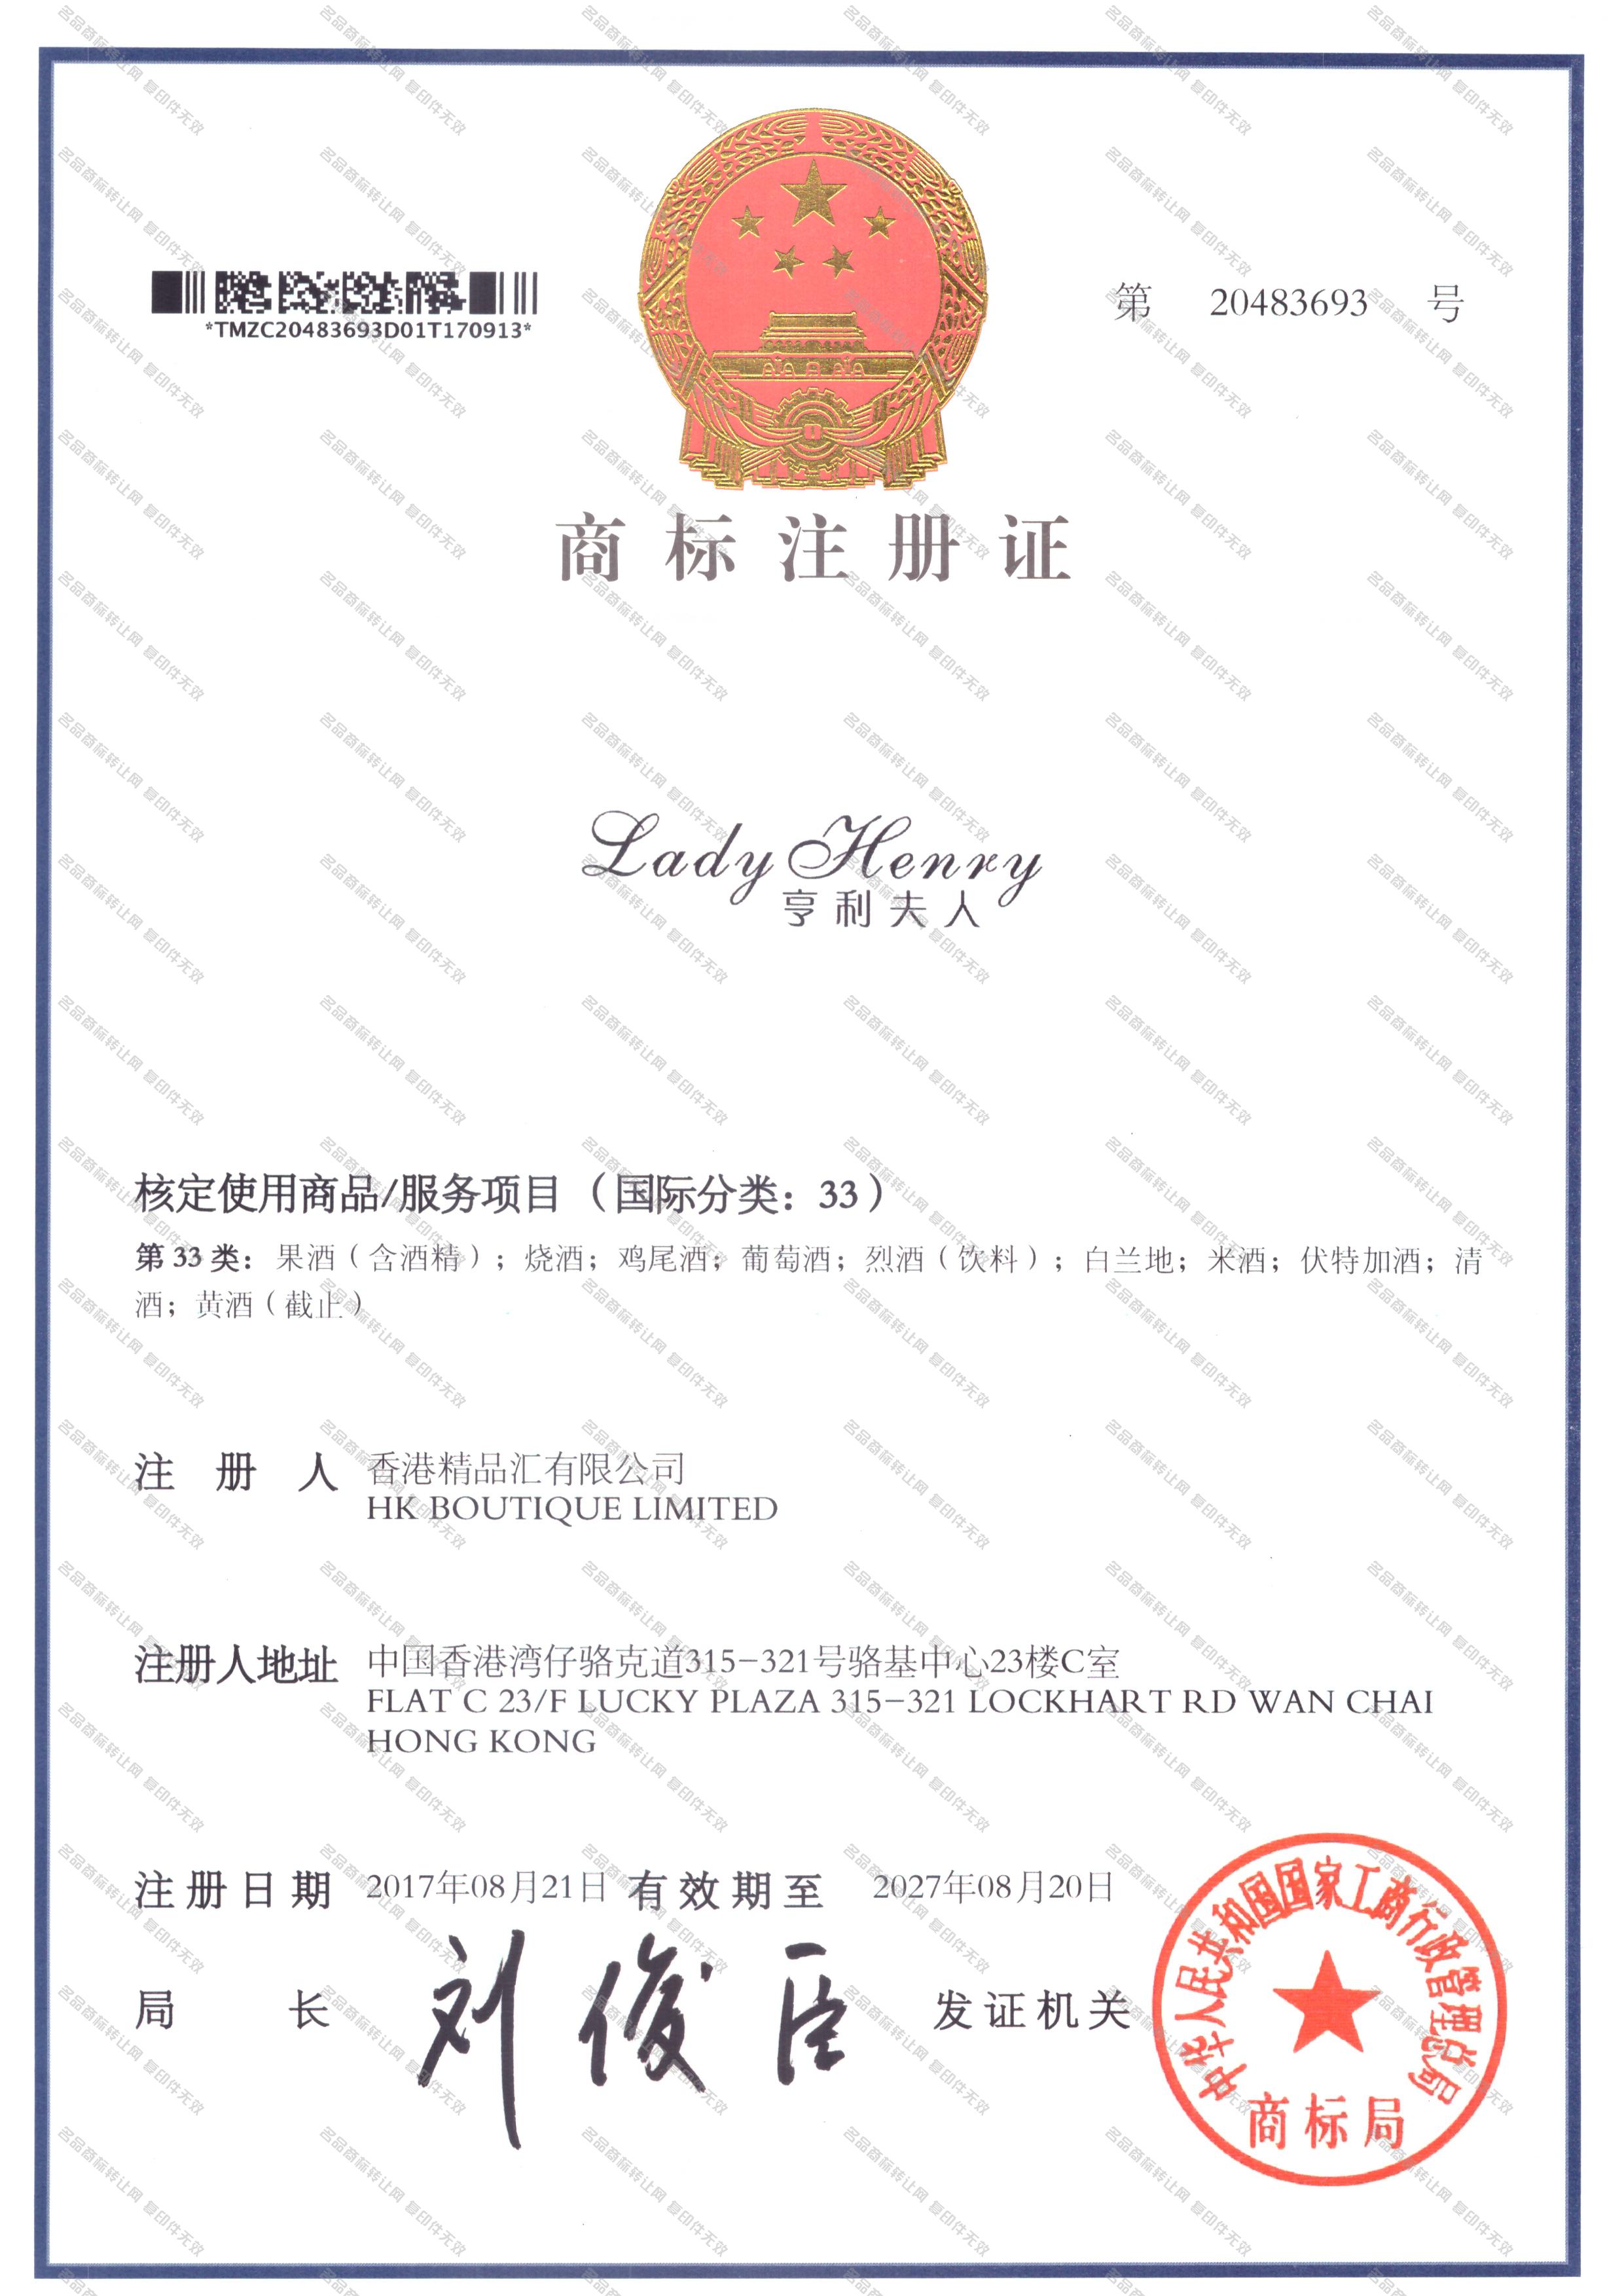 亨利夫人 LADYHENRY注册证